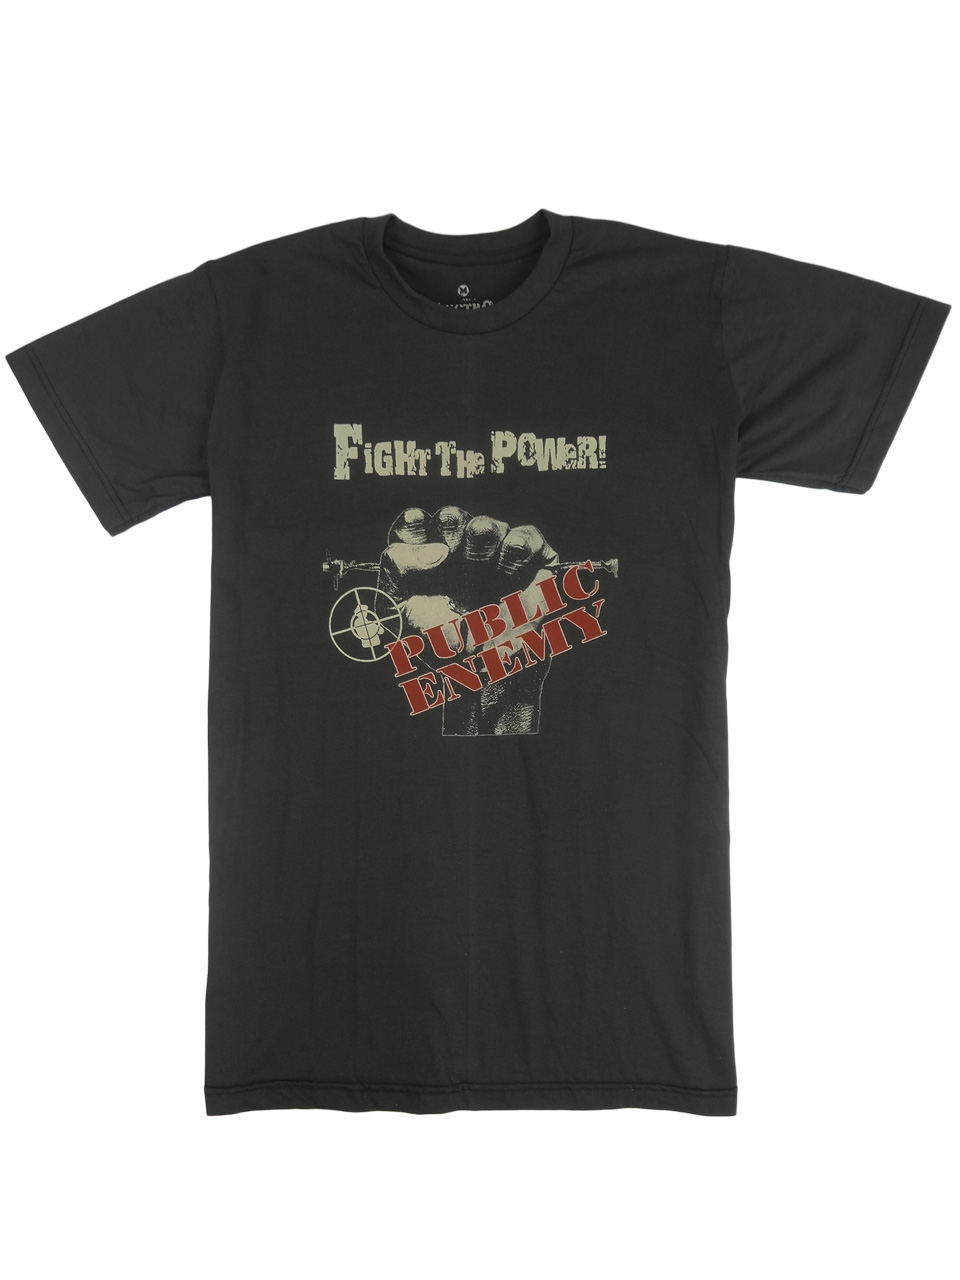 ロックTシャツ Public Enemy パブリック エネミー Fight The Power! ebi-0057